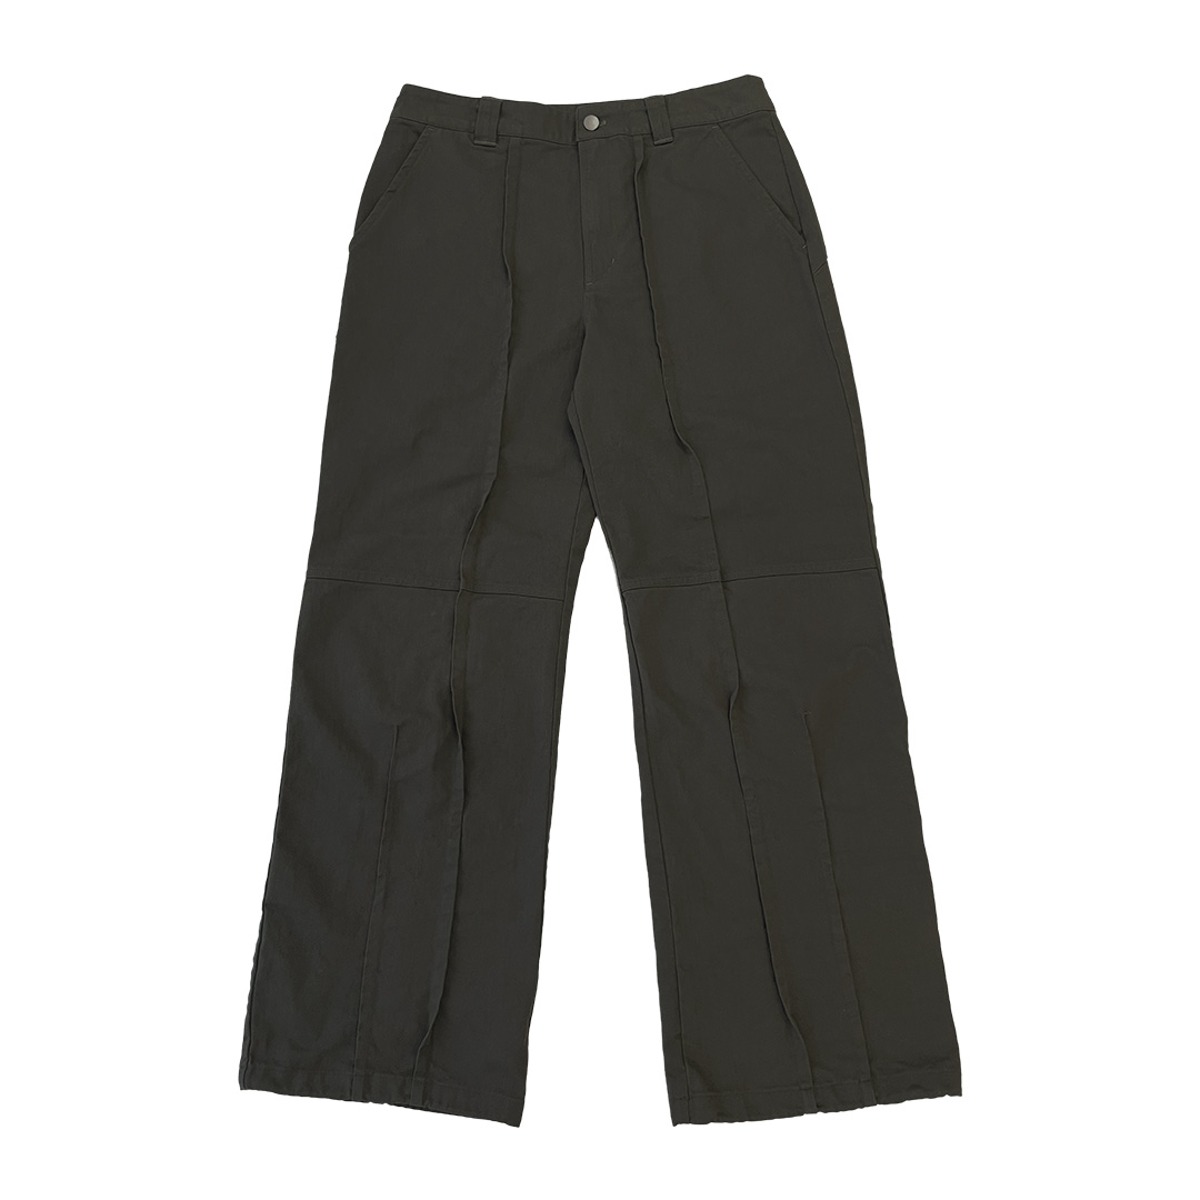 TCM stitch pants (khaki brown) (6/14 예약배송)